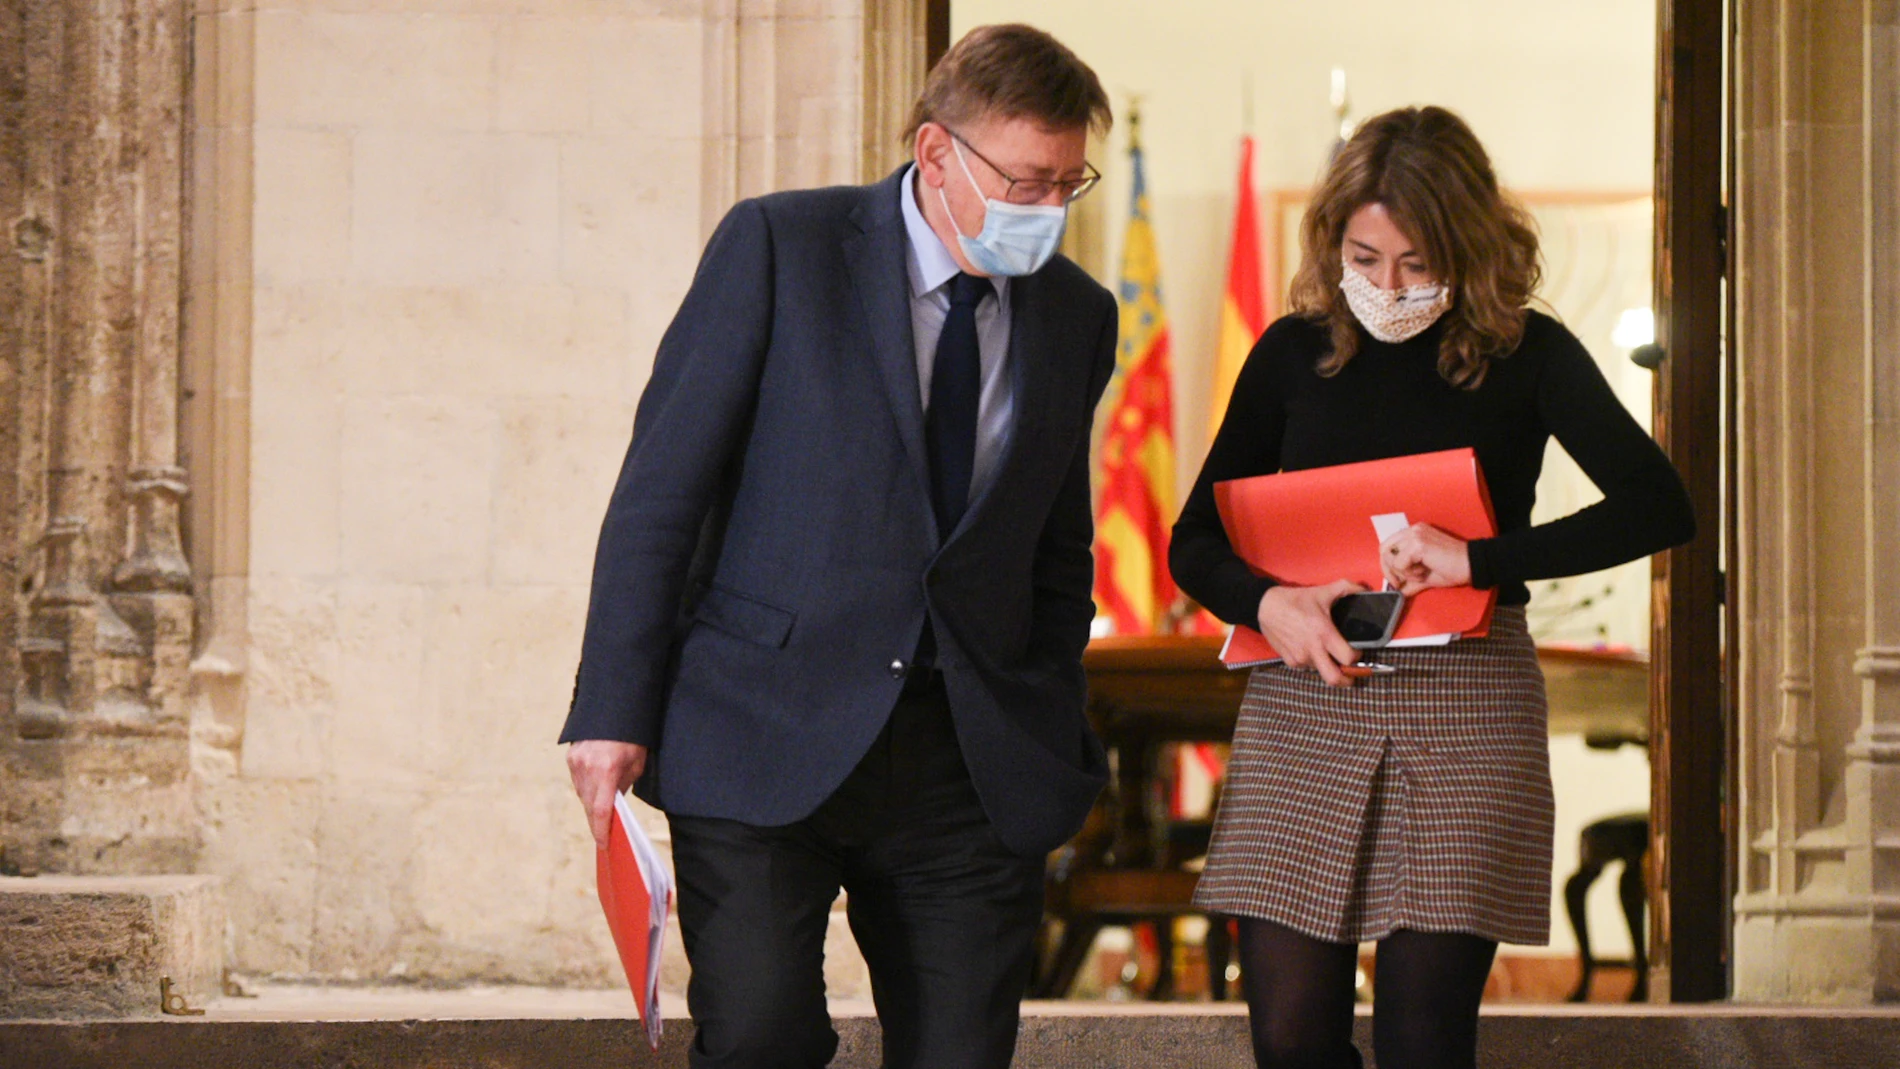 La ministra de Transportes, Movilidad y Agenda Urbana, Raquel Sánchez, y el presidente de la Generalitat valenciana, Ximo Puig, a su llegada a una reunión al Palau de la Generalitat